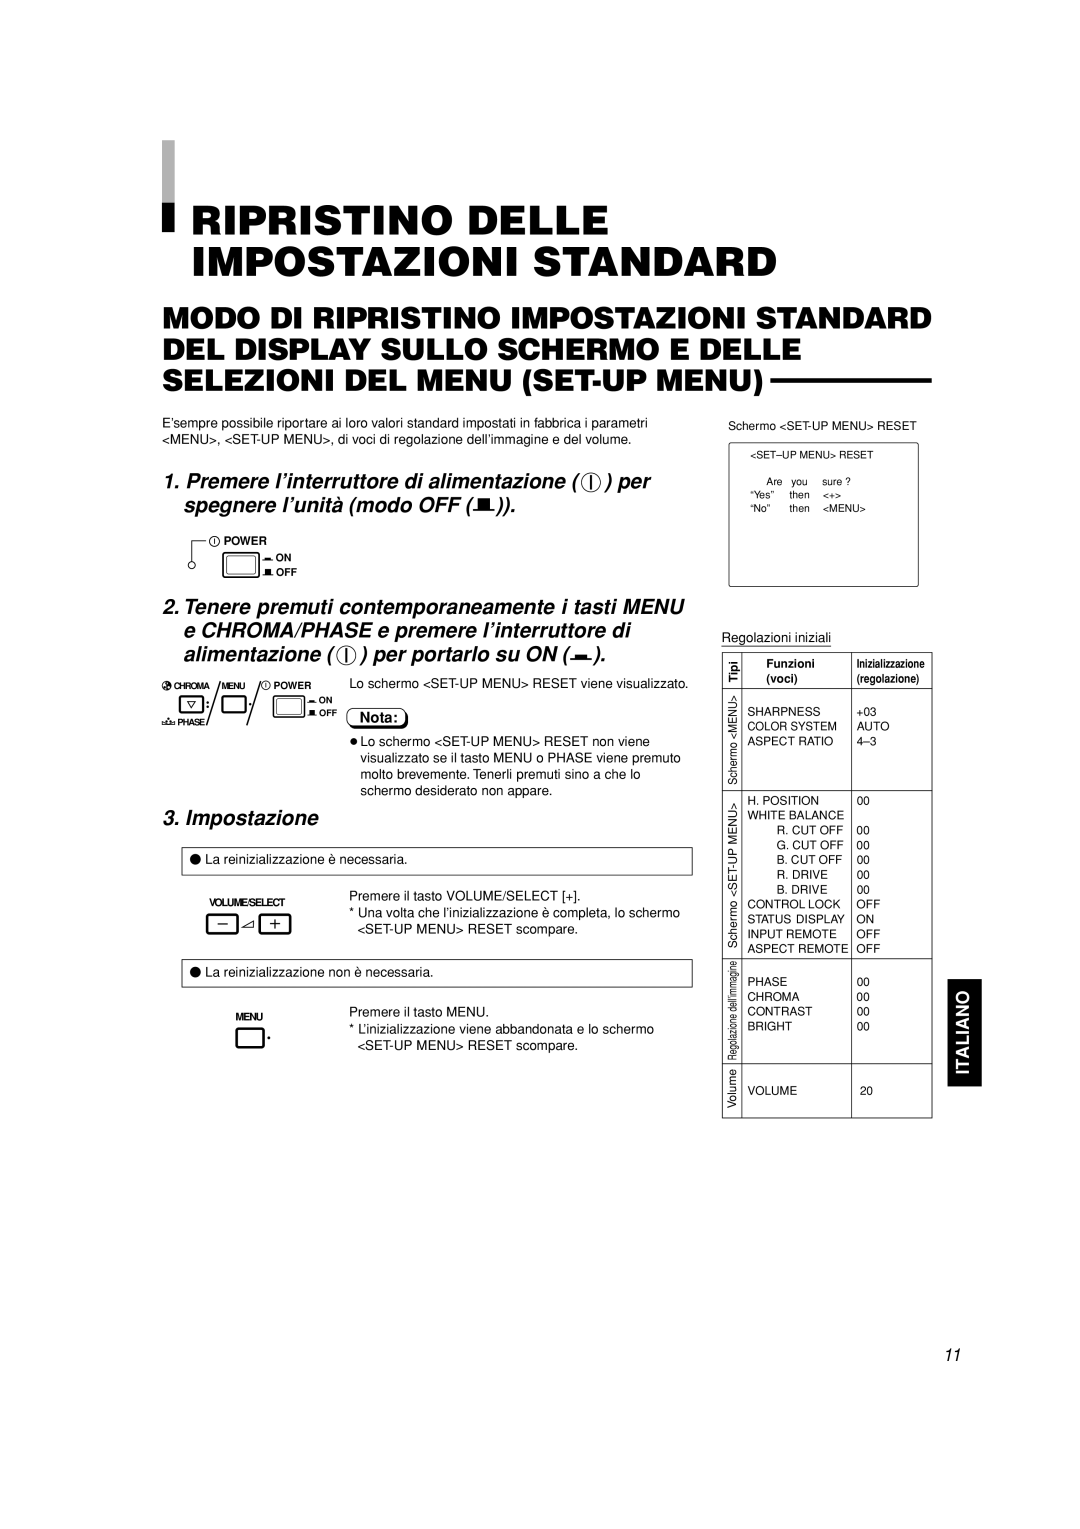 JVC TM-A101G manual Ripristino Delle Impostazioni Standard, Impostazione, Italiano, Nota 